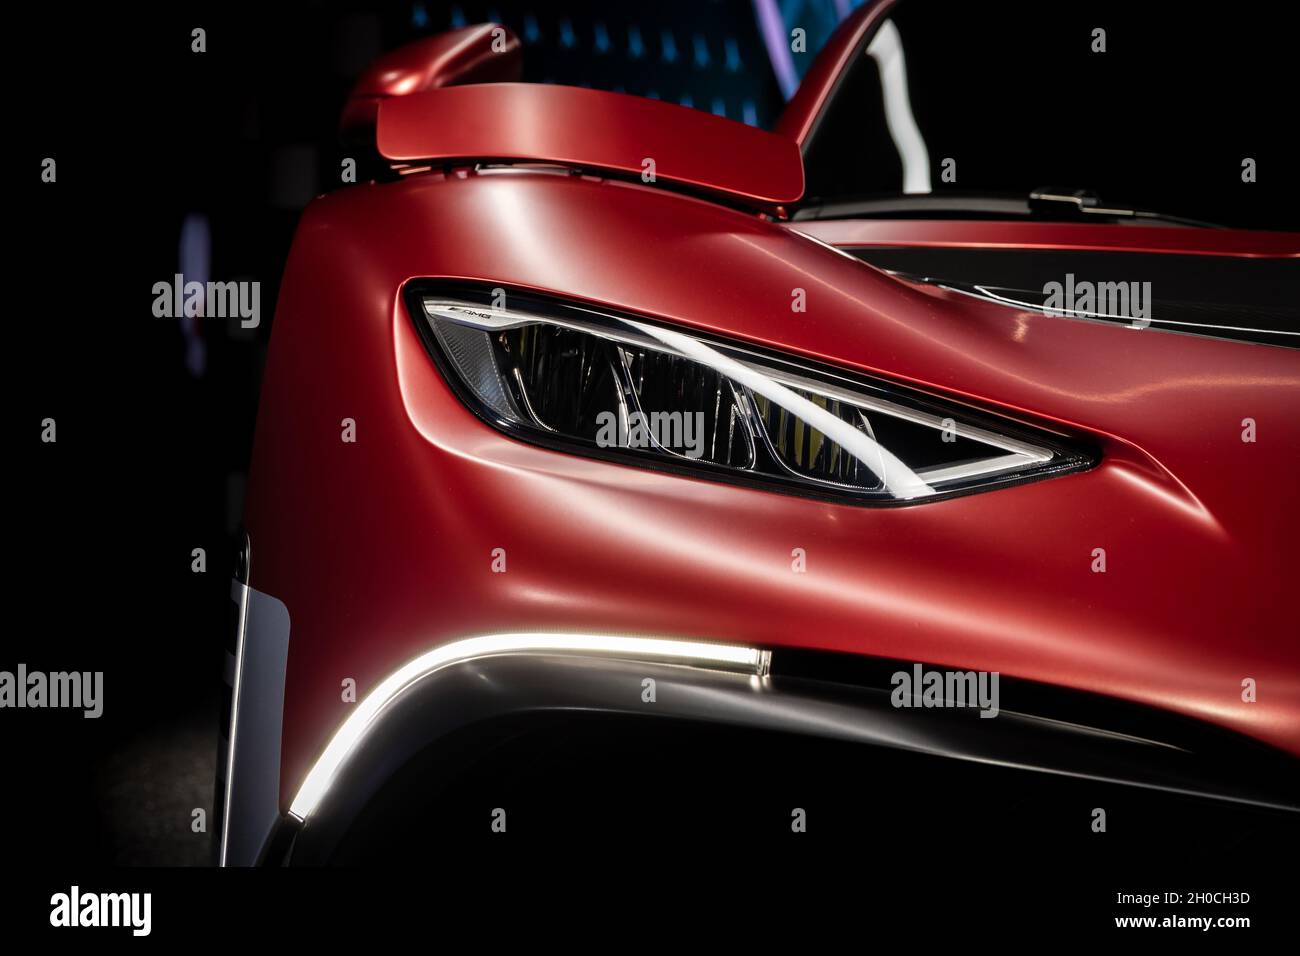 Mercedes-AMG Project One, une voiture de sport présentée au salon automobile IAA Mobility 2021 à Munich, en Allemagne, le 6 septembre 2021. Banque D'Images